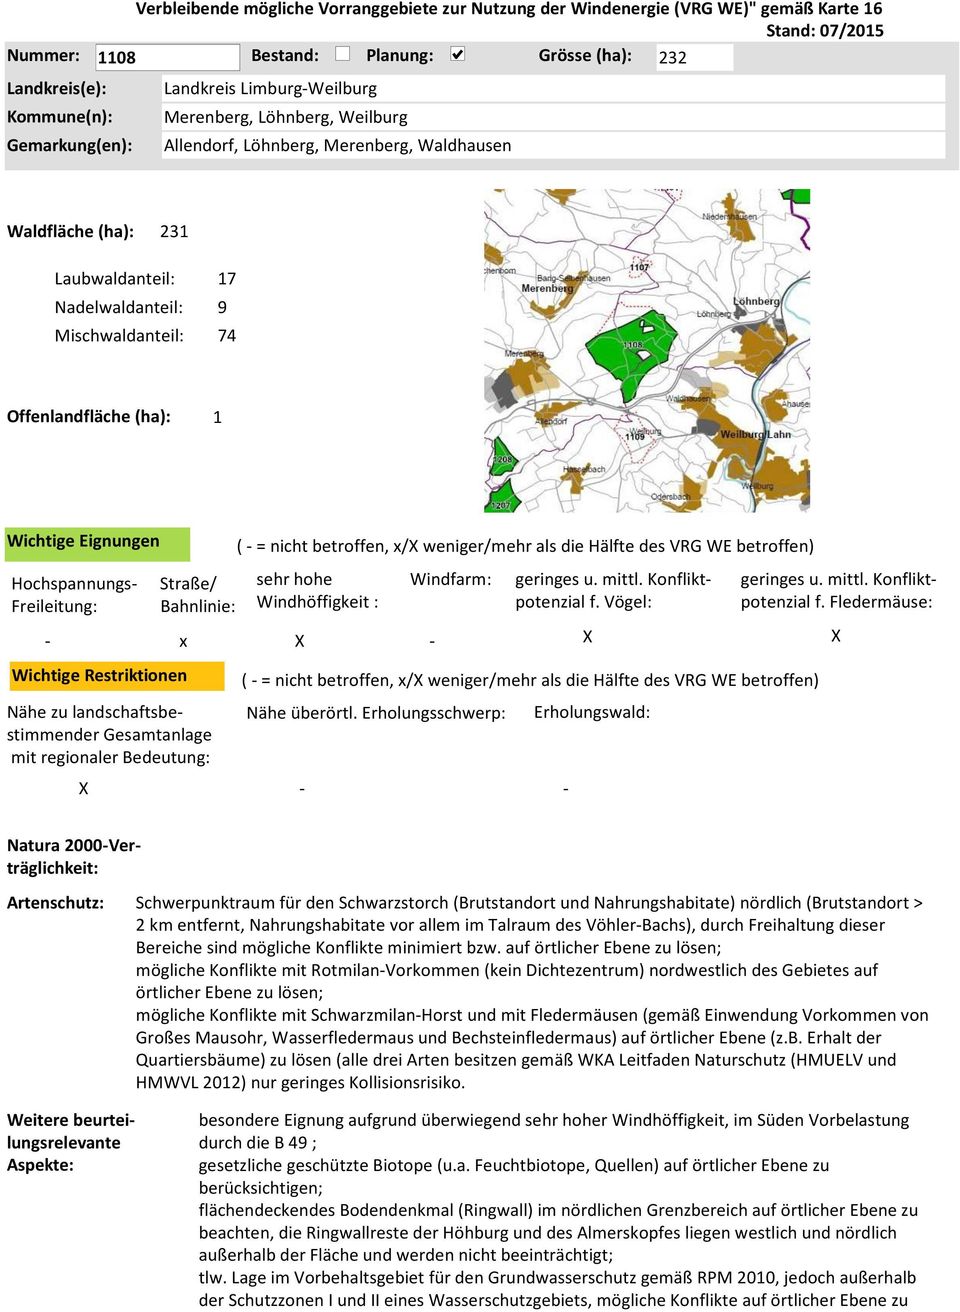 betroffen, x/ weniger/mehr als die Hälfte des VRG WE betroffen) Natura 2000Verträglichkeit: Schwerpunktraum für den Schwarzstorch (Brutstandort und Nahrungshabitate) nördlich (Brutstandort > 2 km